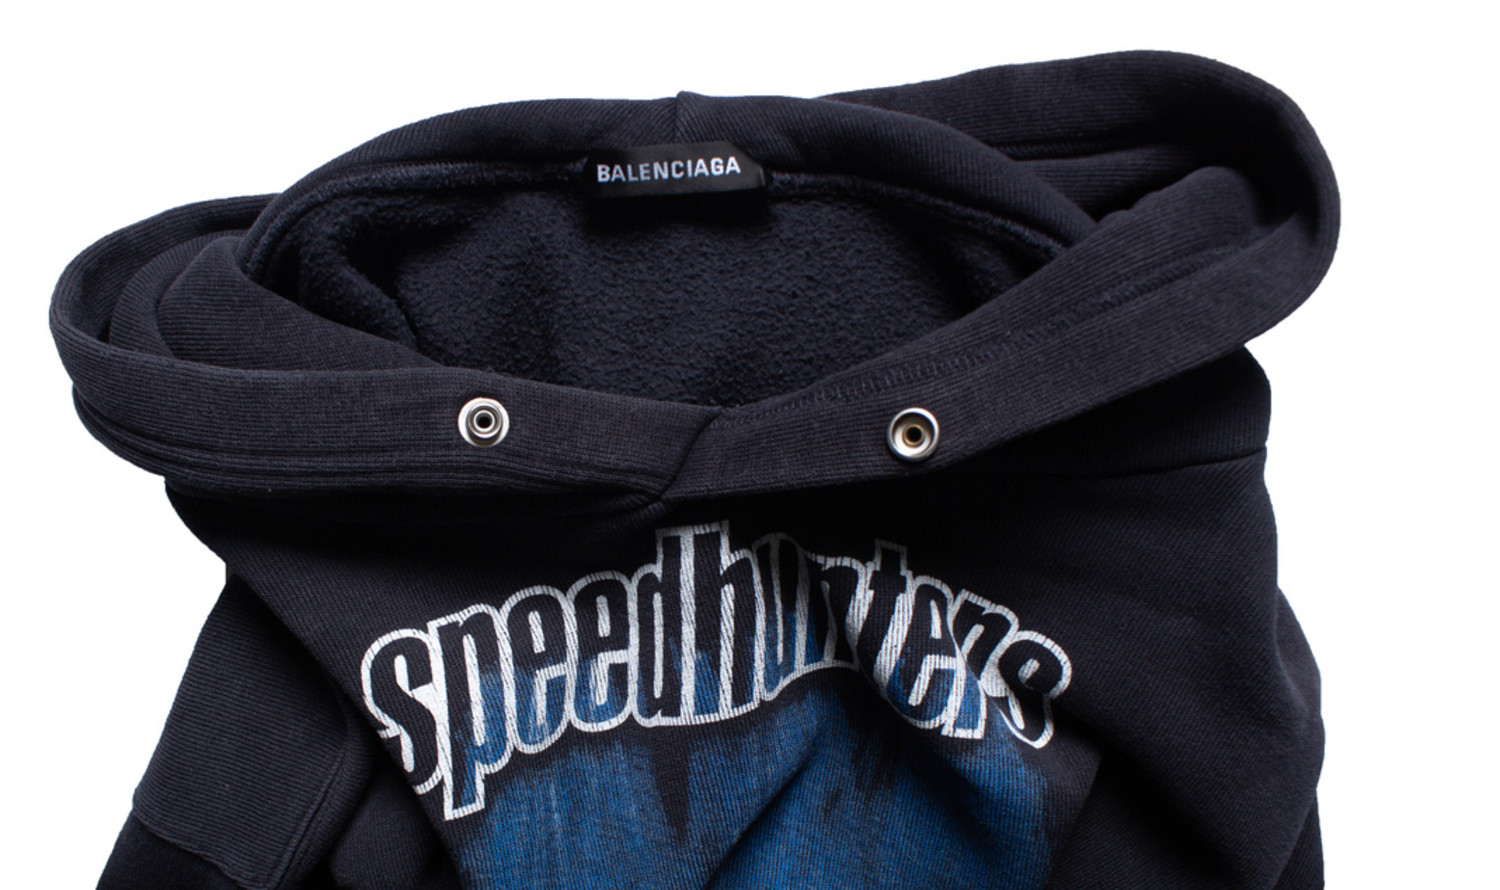 Balenciaga, Speedhunters hoodie - Unique Designer Pieces